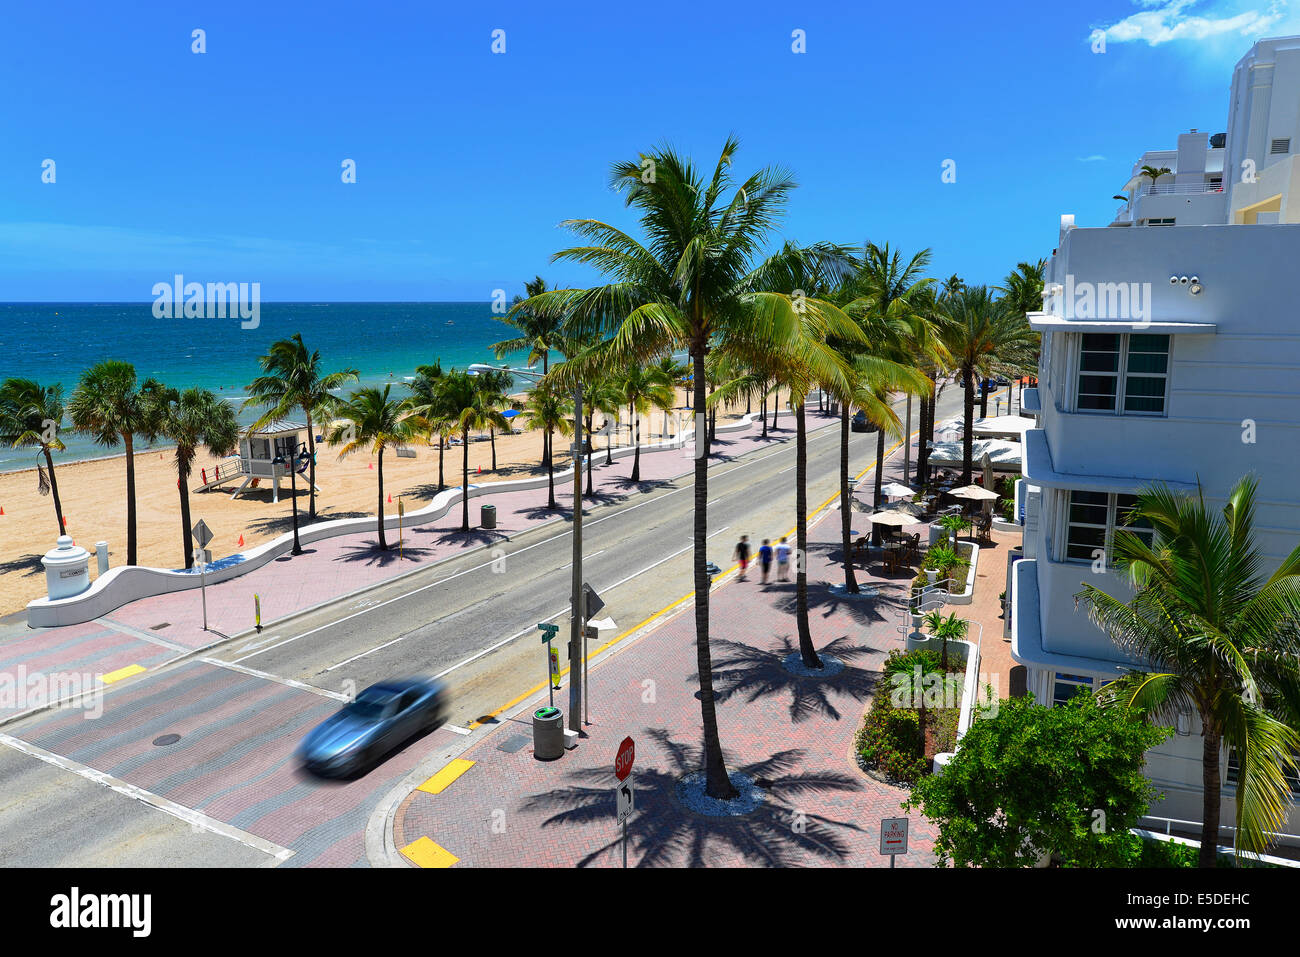 En Sunrise Beach Ft.Lauderdale con palmeras y característica de entrada de playa. Foto de stock